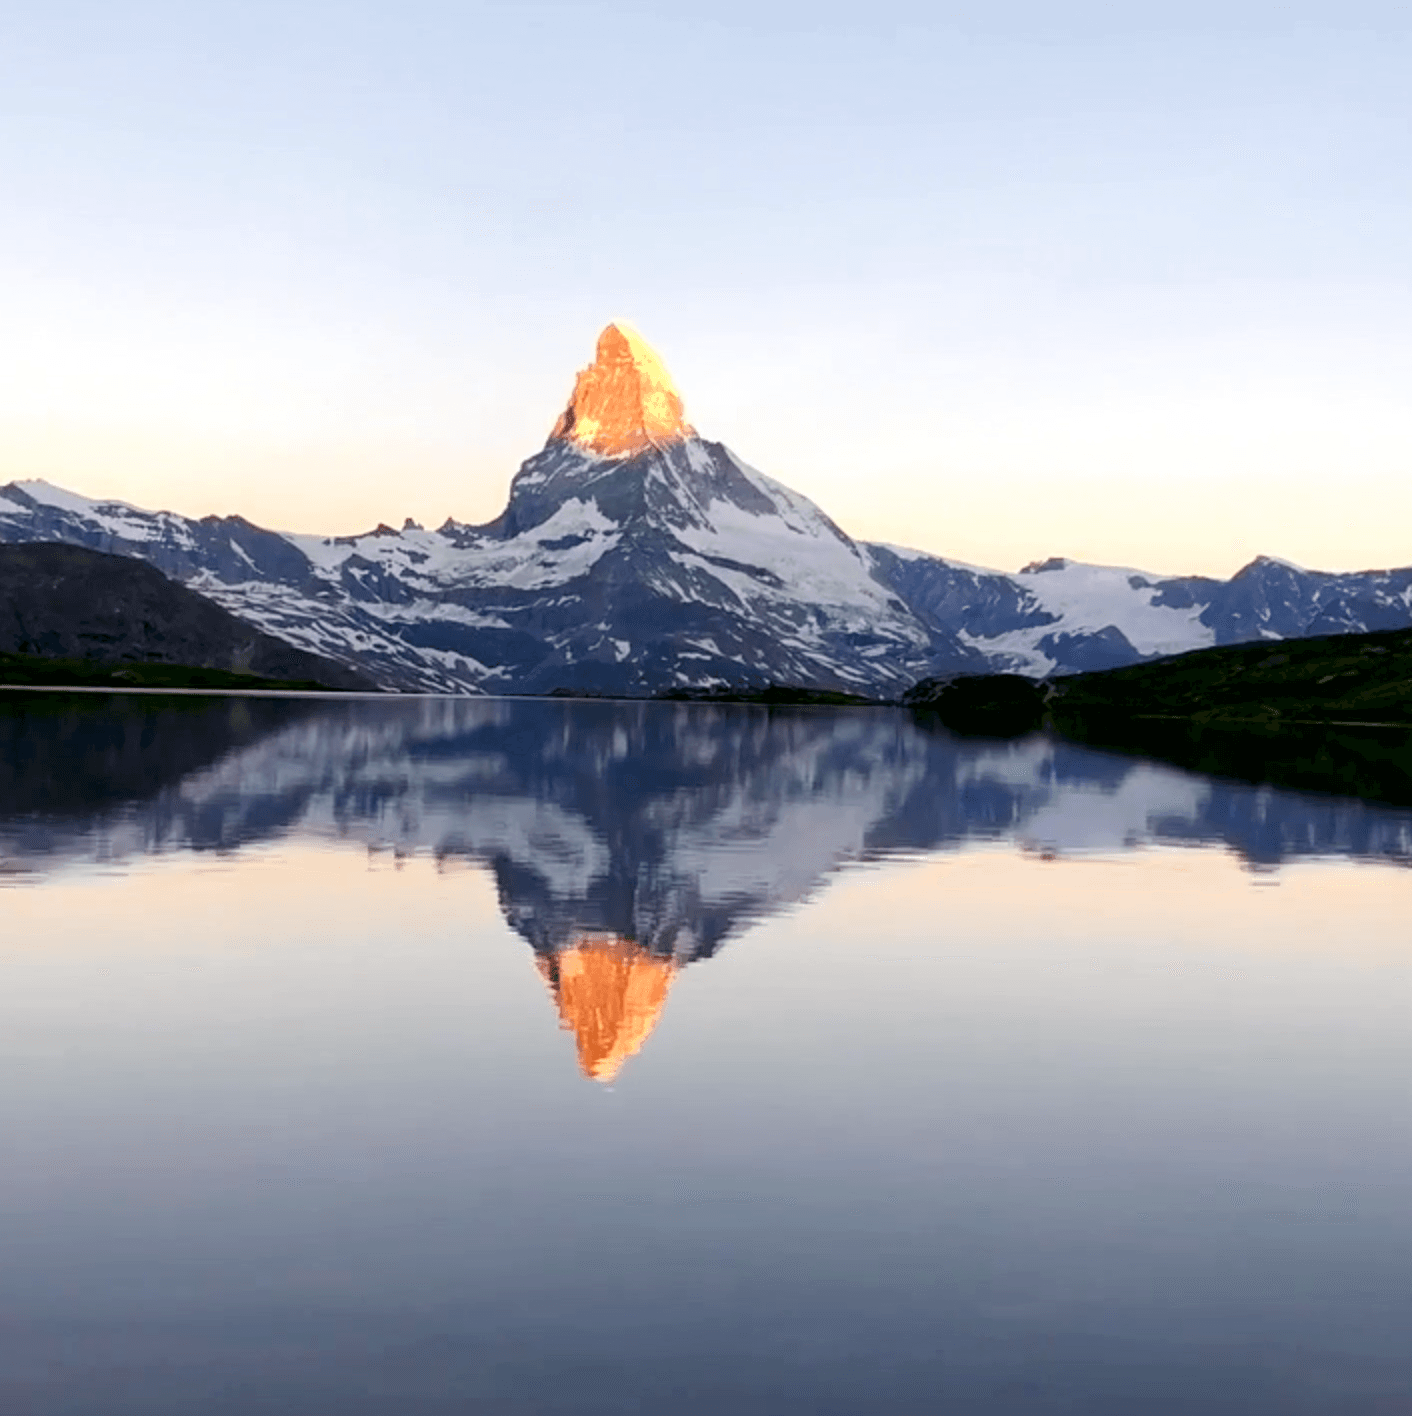 The Matterhorn rises